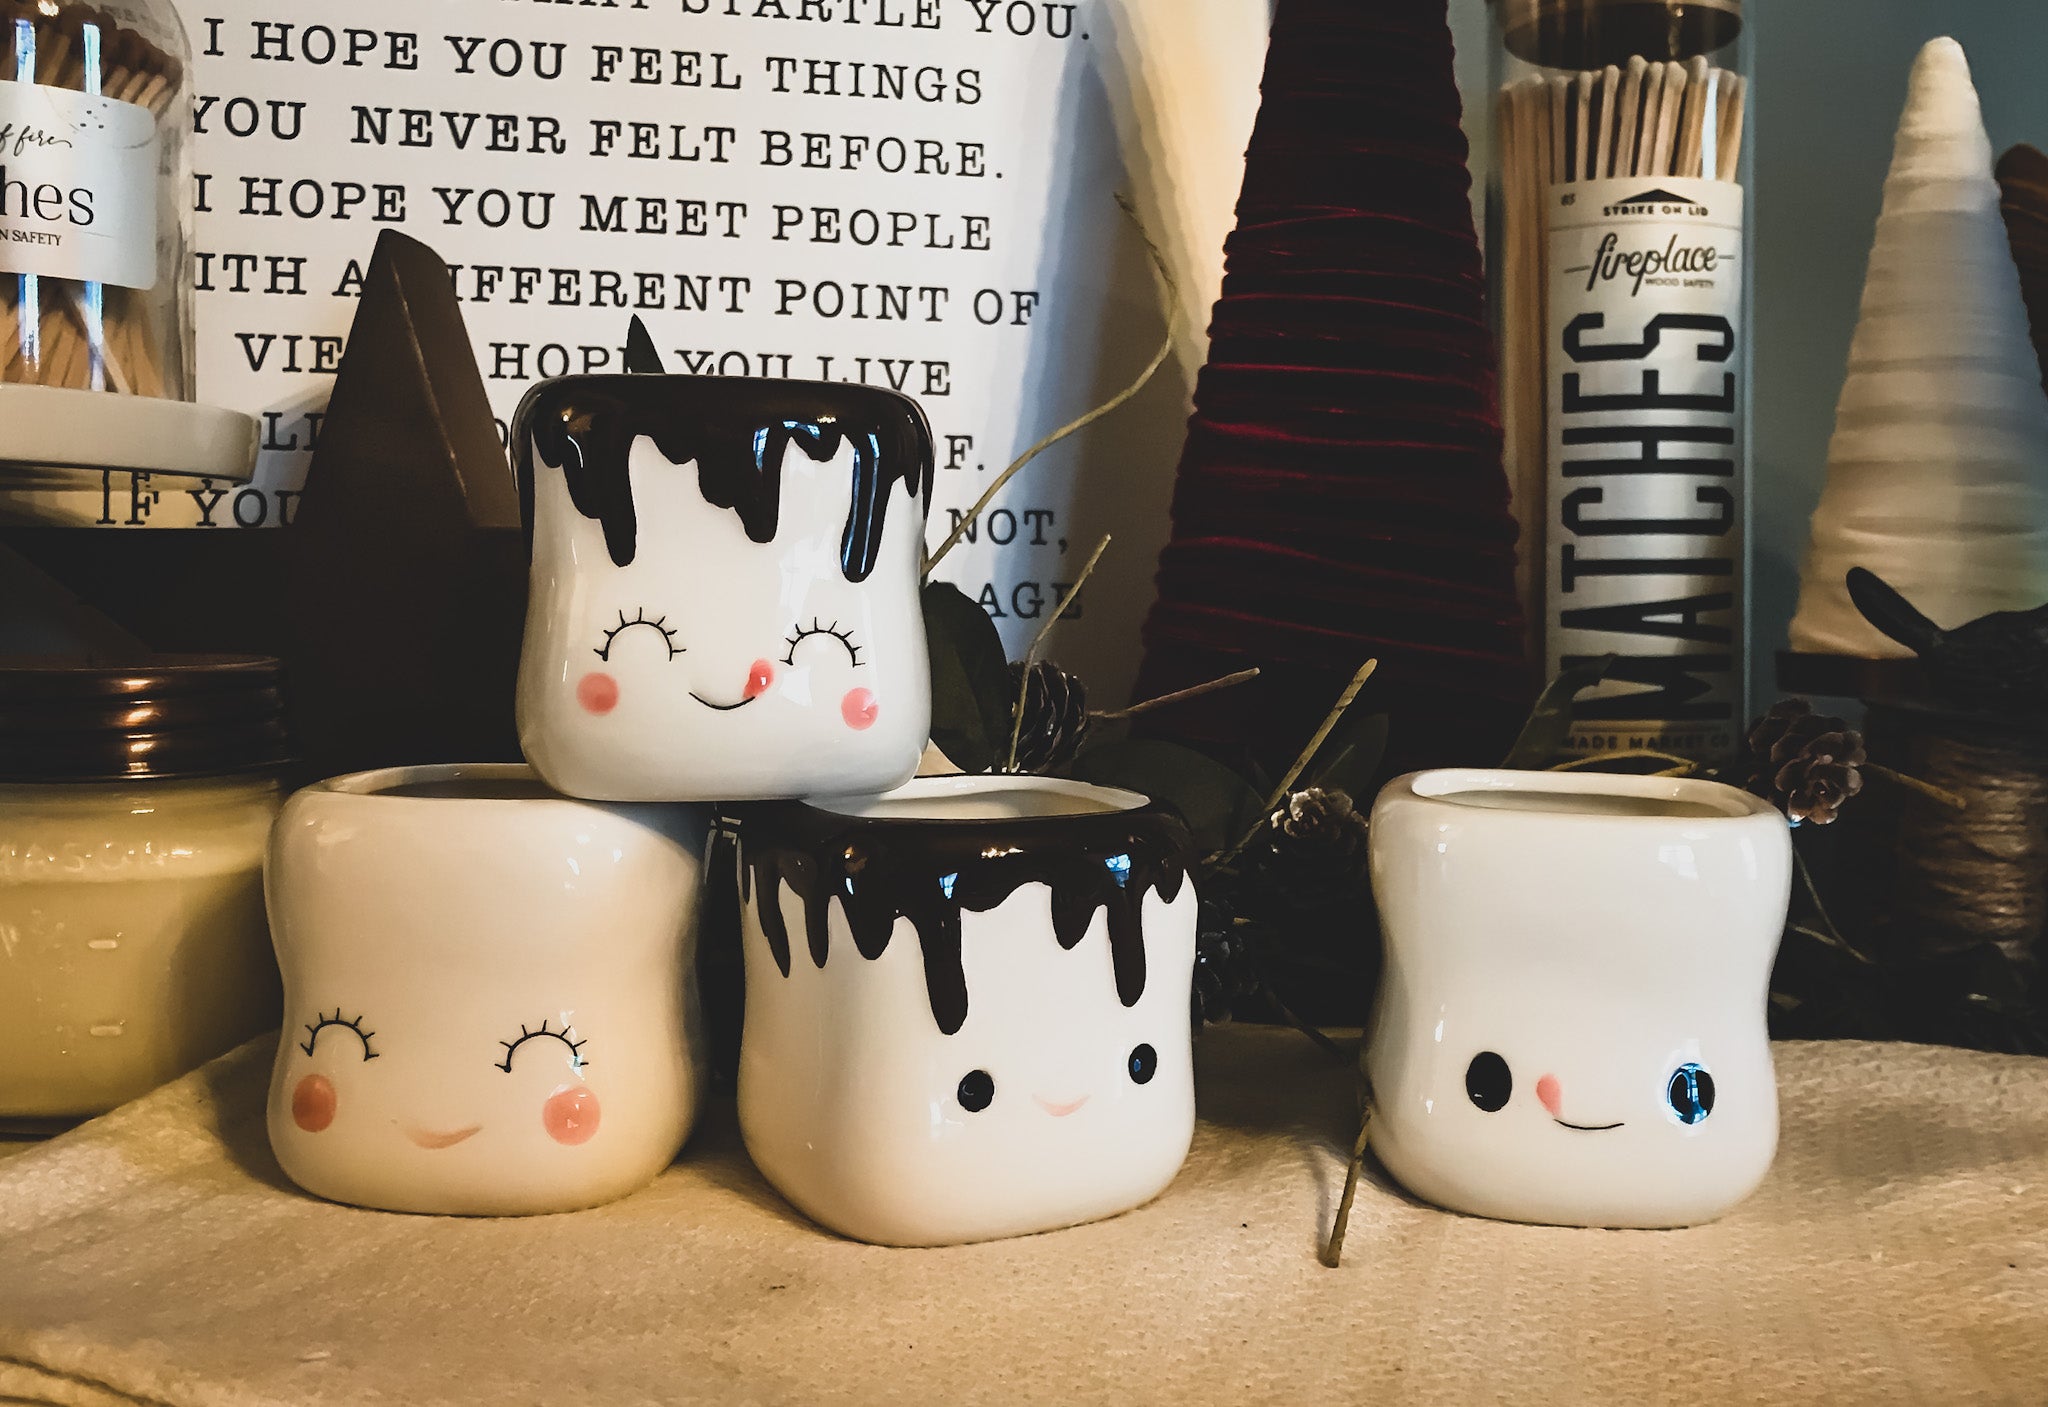 Marshmallow Shaped Hot Chocolate Mugs